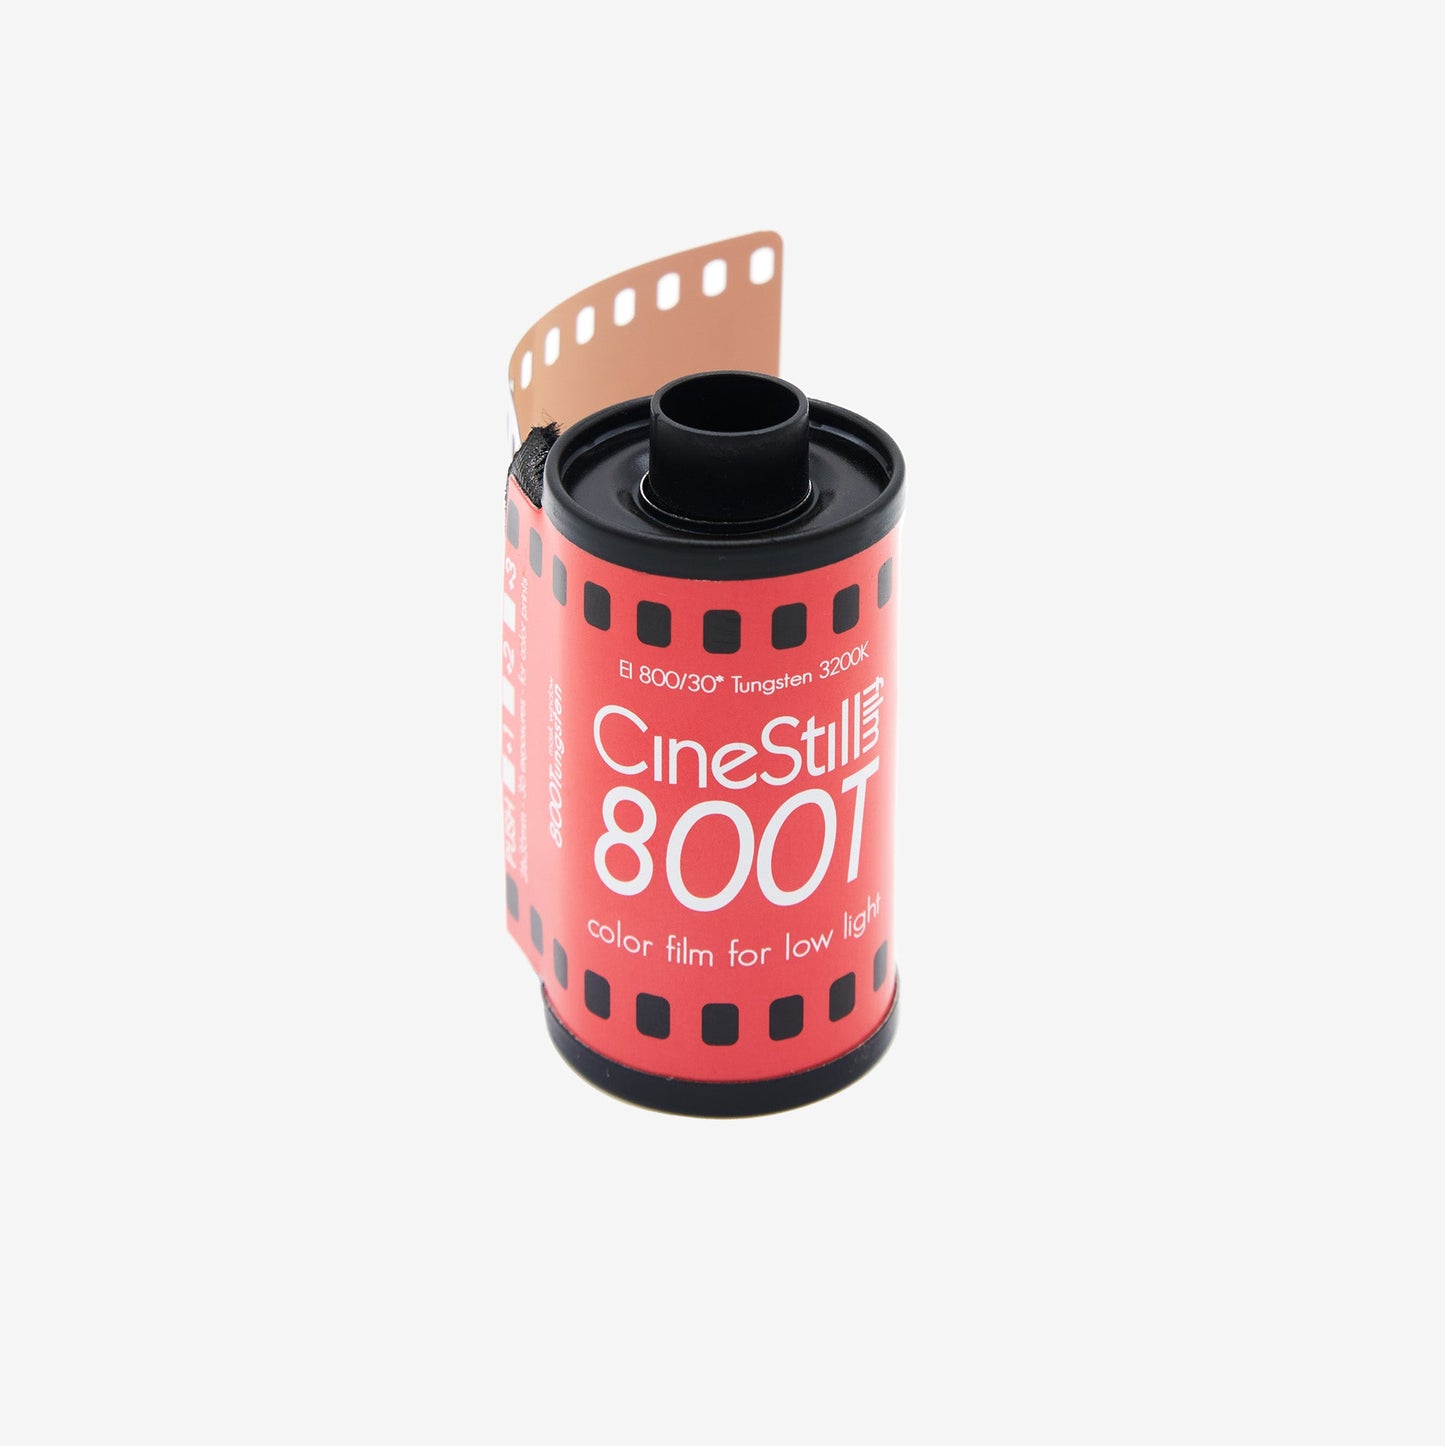 CineStill Xpro 800T Tungsten 35mm